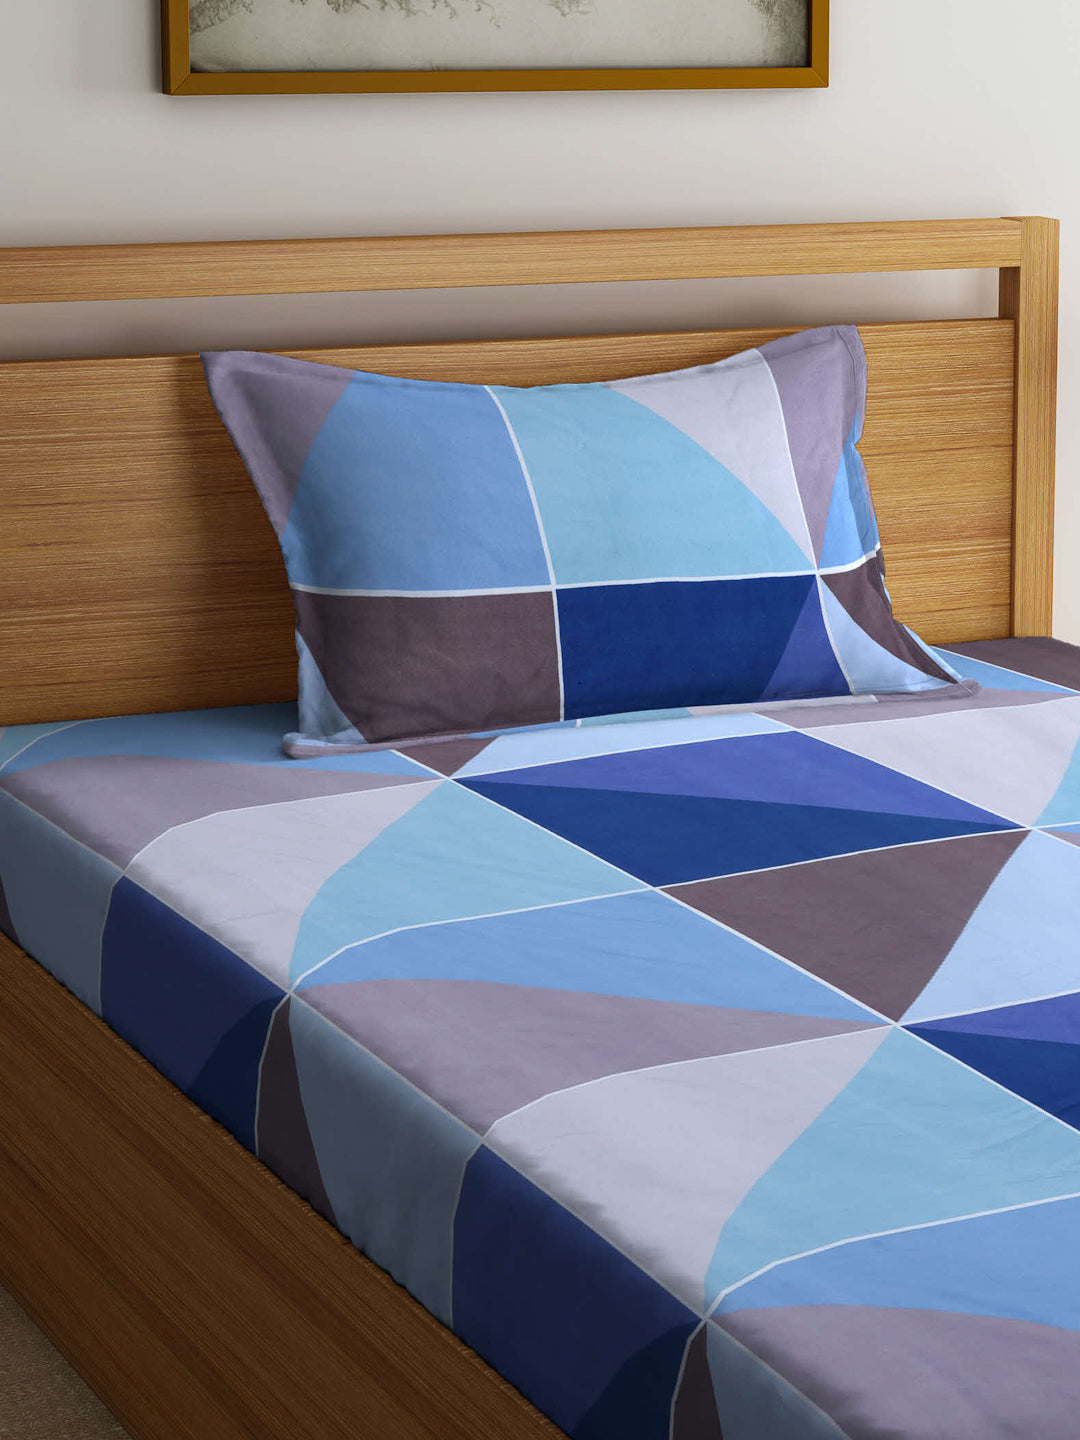 Arrabi Blue Geometric TC Cotton Blend Single Size Bedsheet with 1 Pillow Cover (215 x 150 cm)